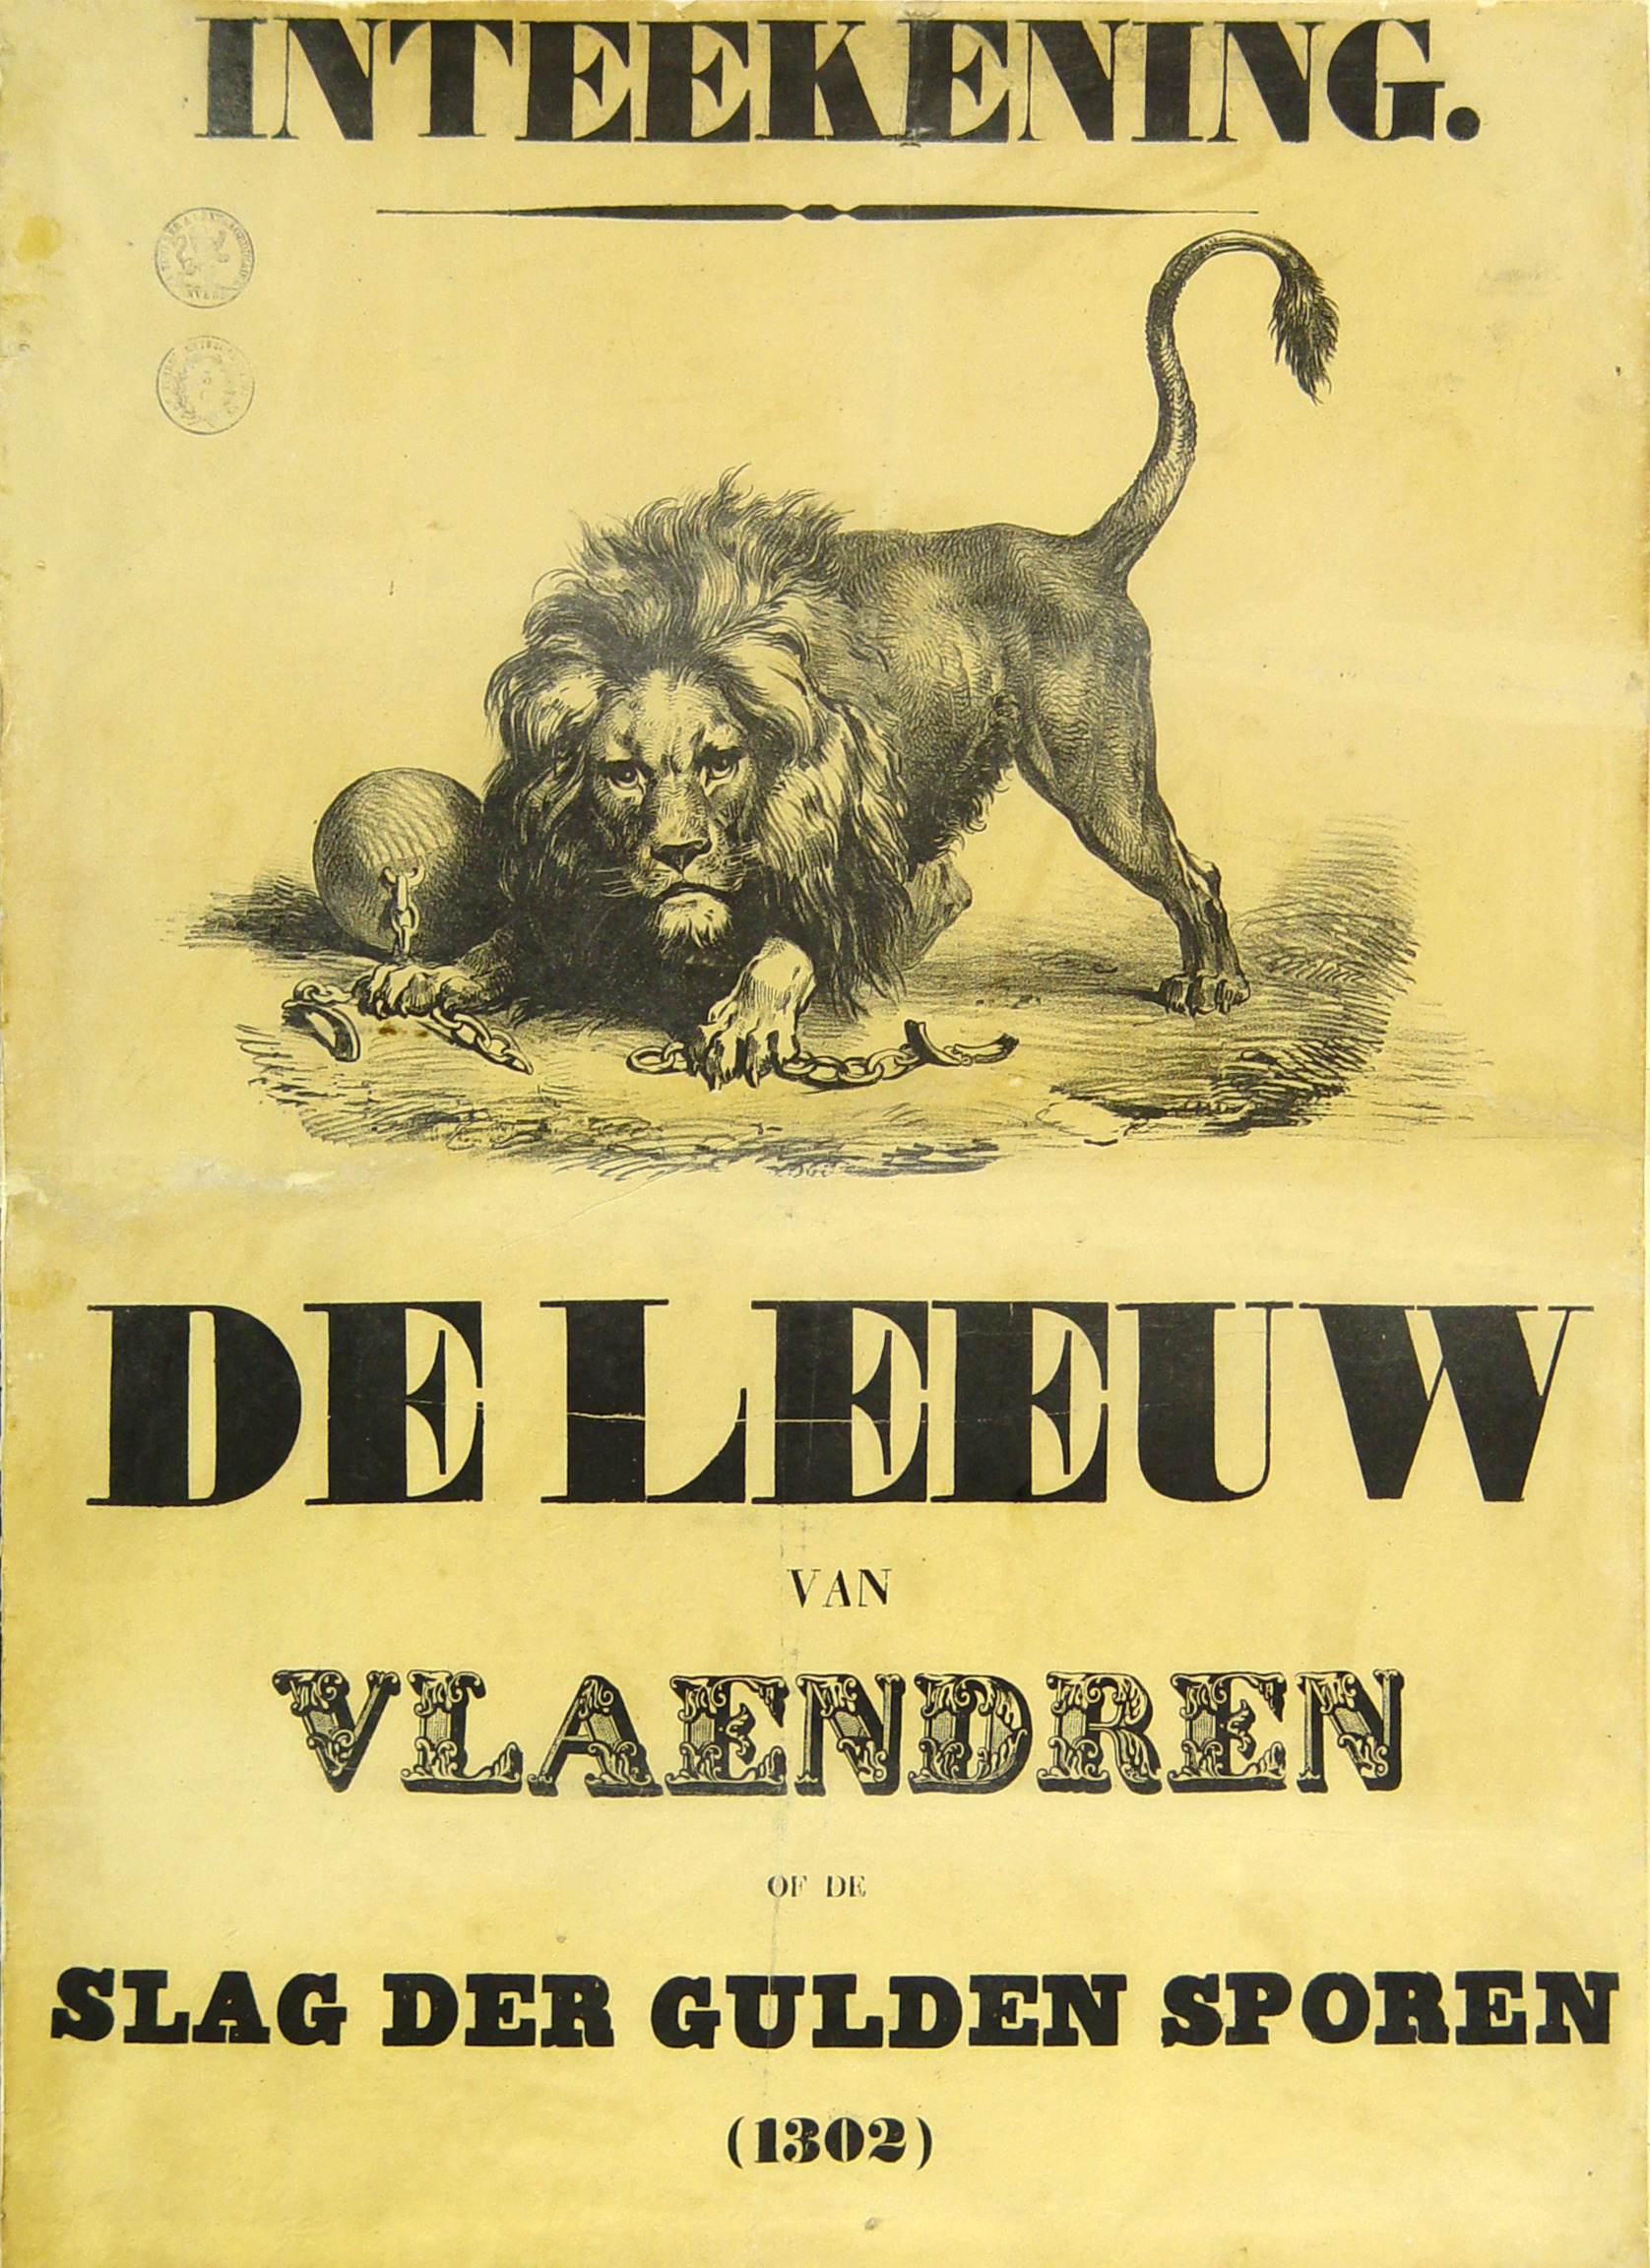 Affiche voor de intekening op 'De Leeuw van Vlaenderen', in een ontwerp van Gustaaf Wappers [1838]